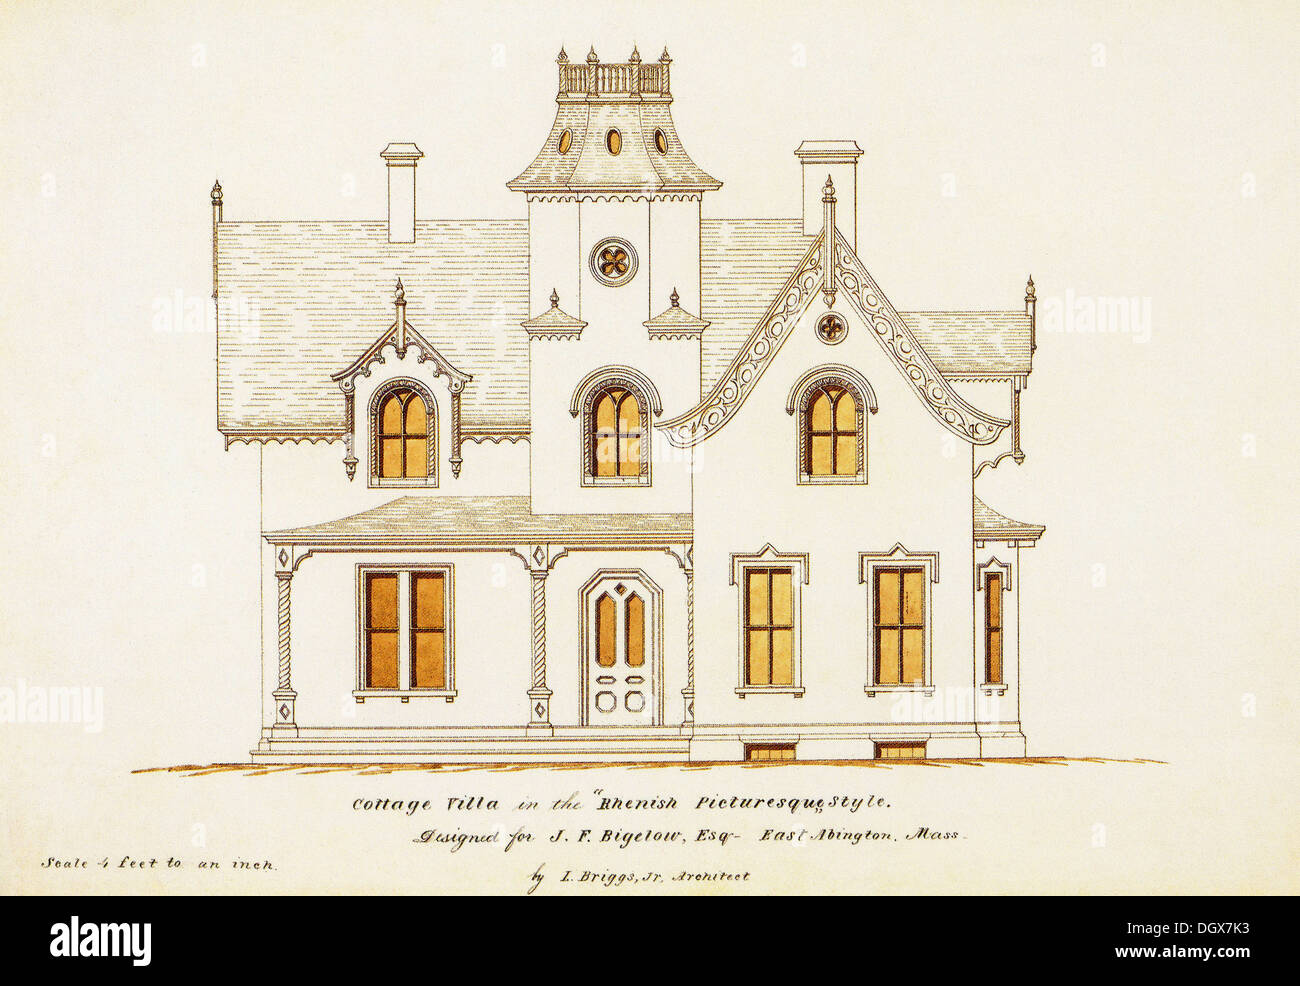 Plan de maison historique, Massachusetts, USA, 1858 Banque D'Images